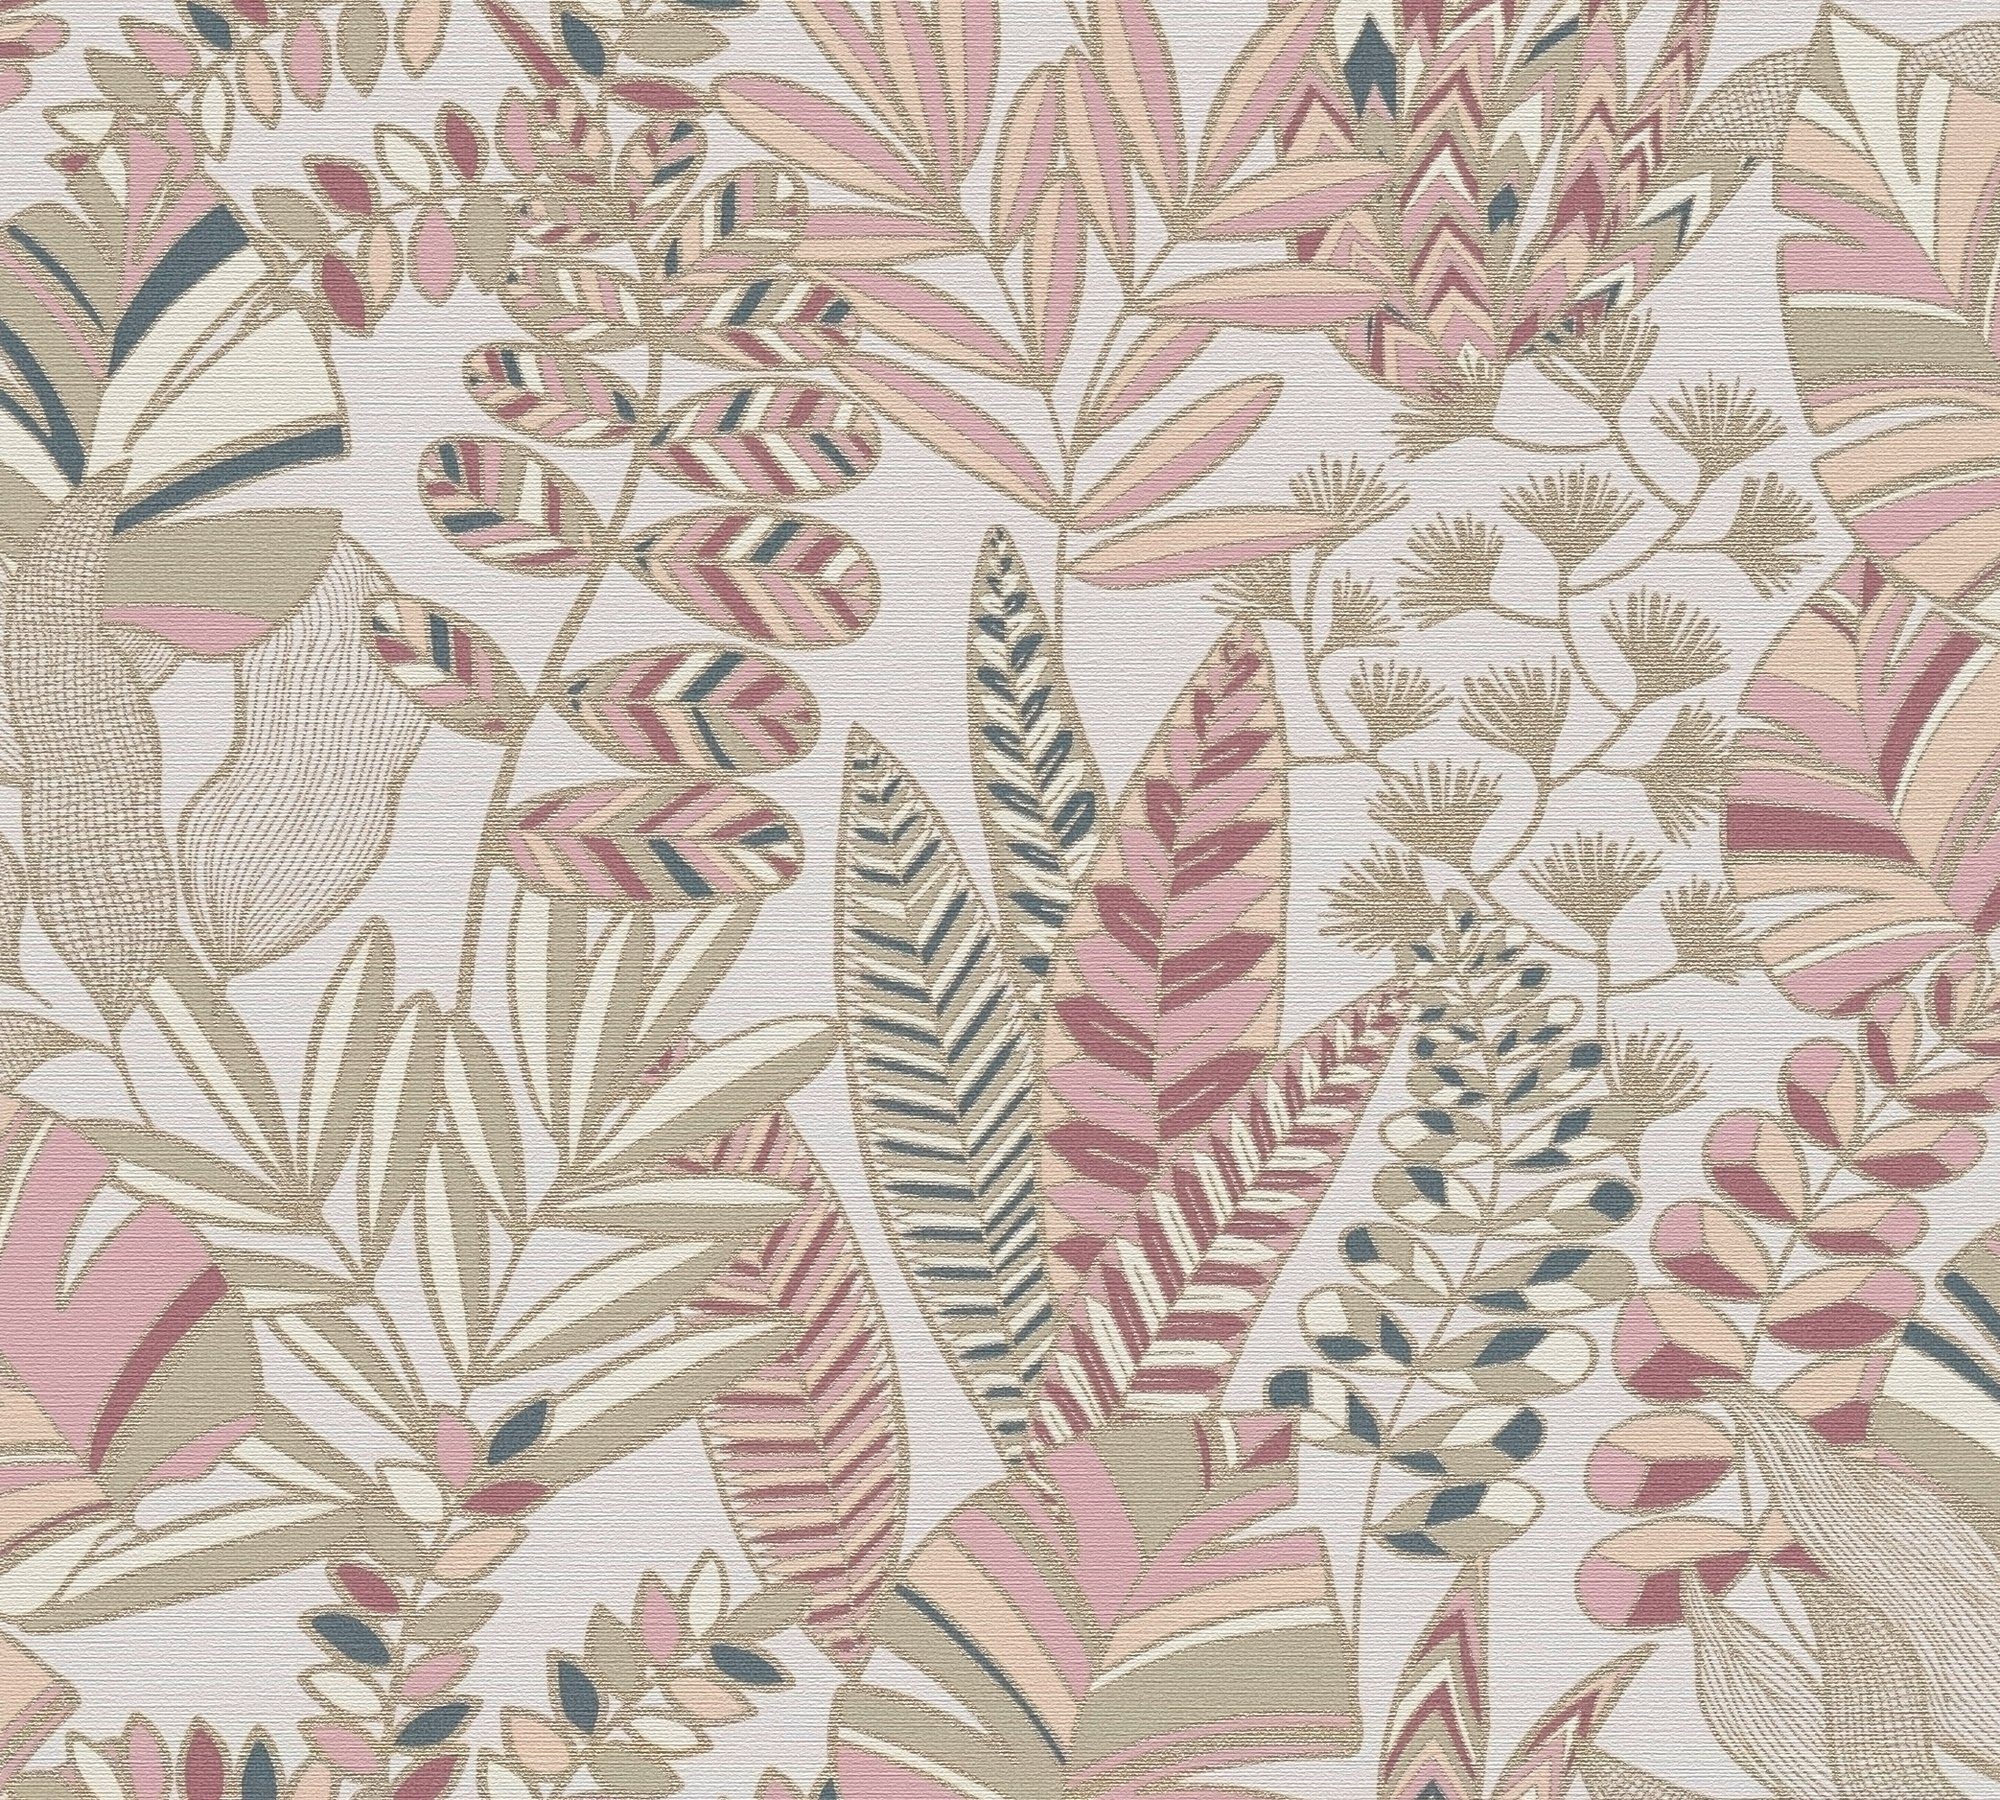 Floral, Création matt, Blättern mit Retro bunt,weiß,pink Bunt Pflanzen Tapete Tapete A.S. (1 St), Vliestapete geprägt, Antigua